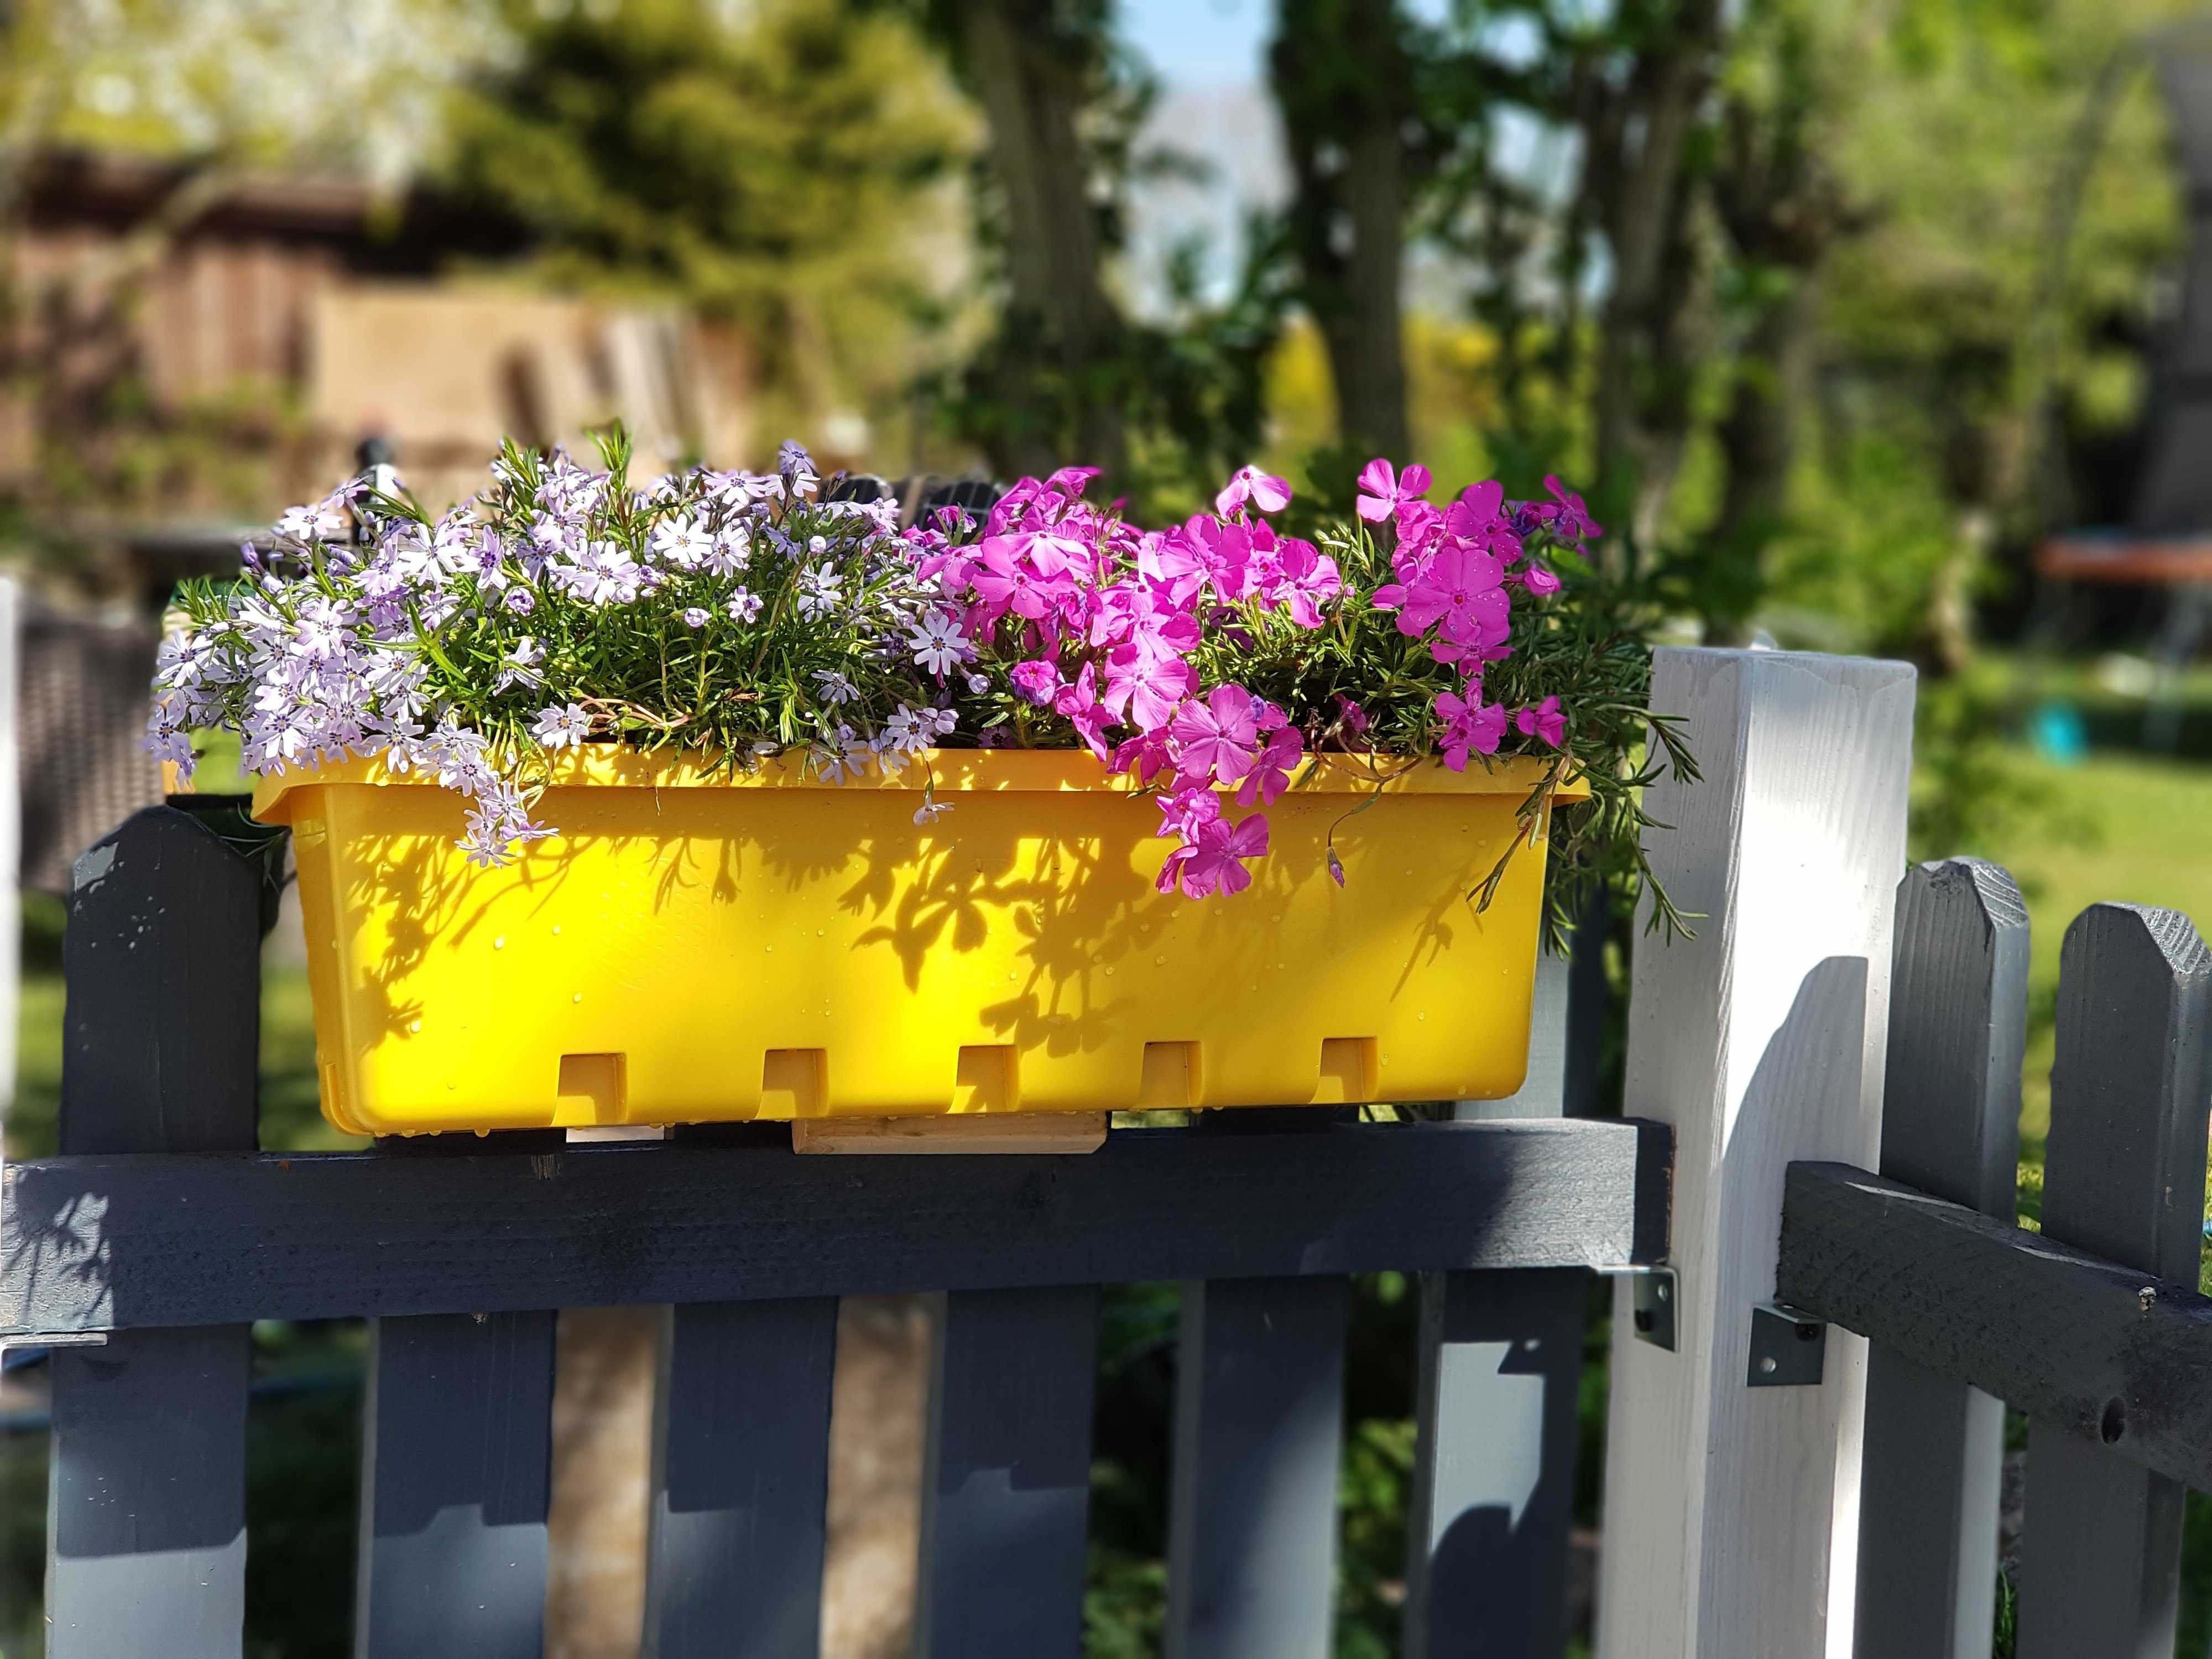 10 Stück, komplett (10er integrierter Kräuterbox Set), Blumenkasten GREENLIFE® Blumenkasten terrabraun, / Zwischenboden GreenLife